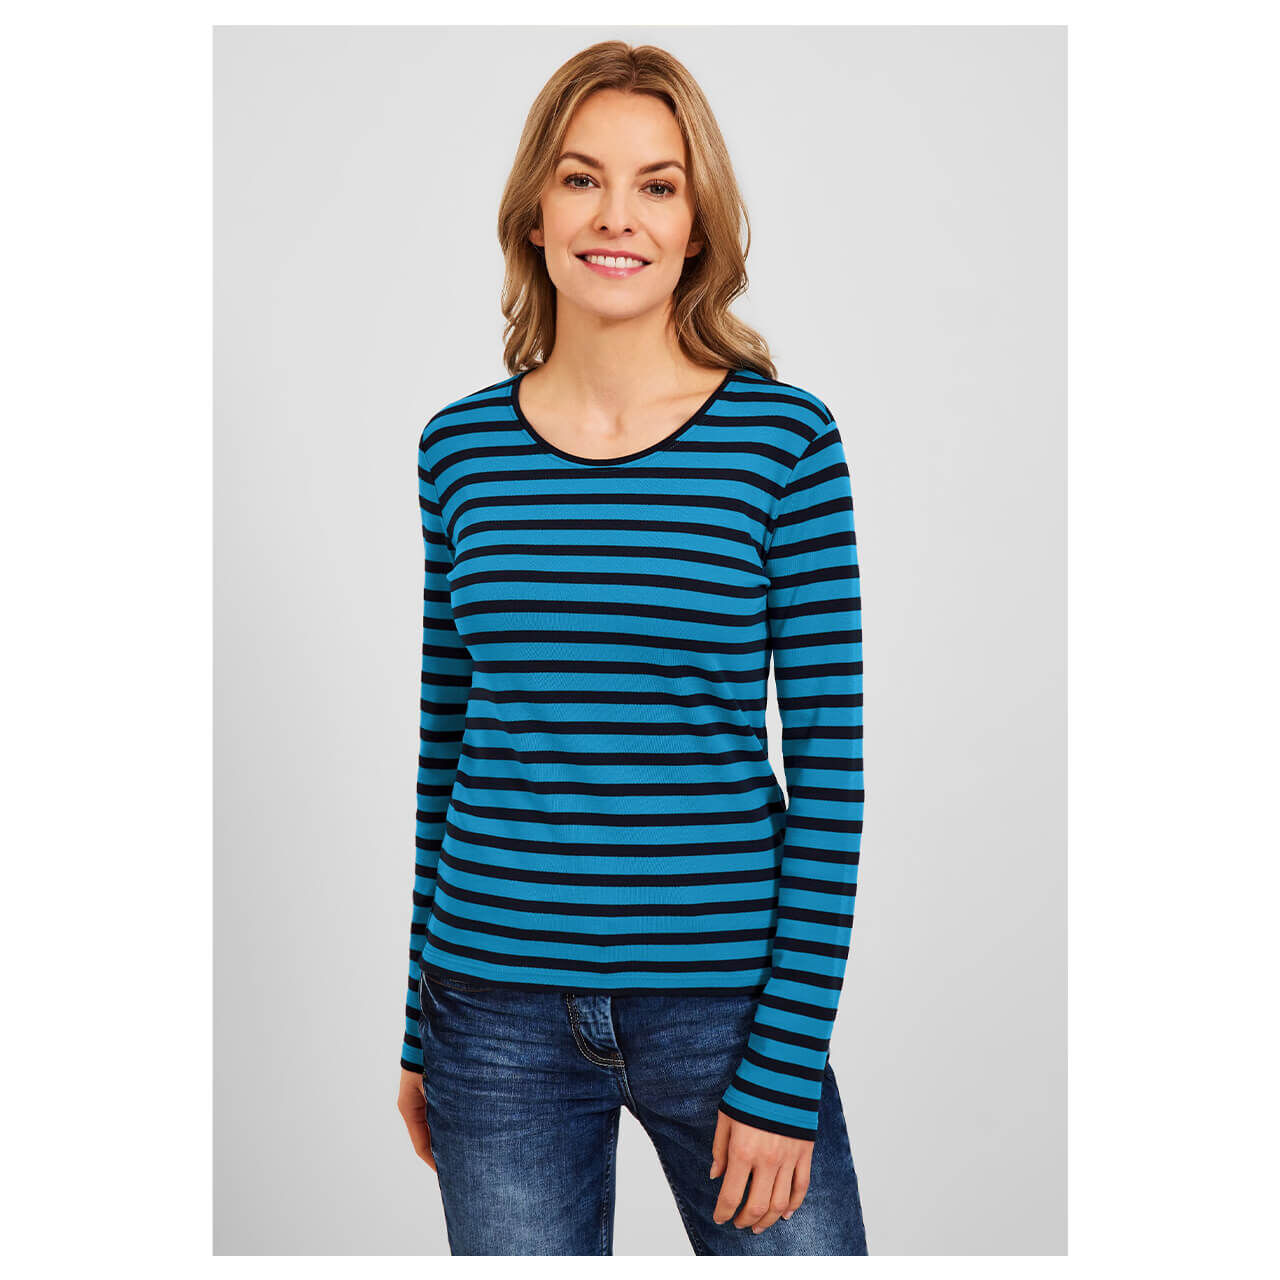 Cecil Pia Langarm Shirt club blue stripes